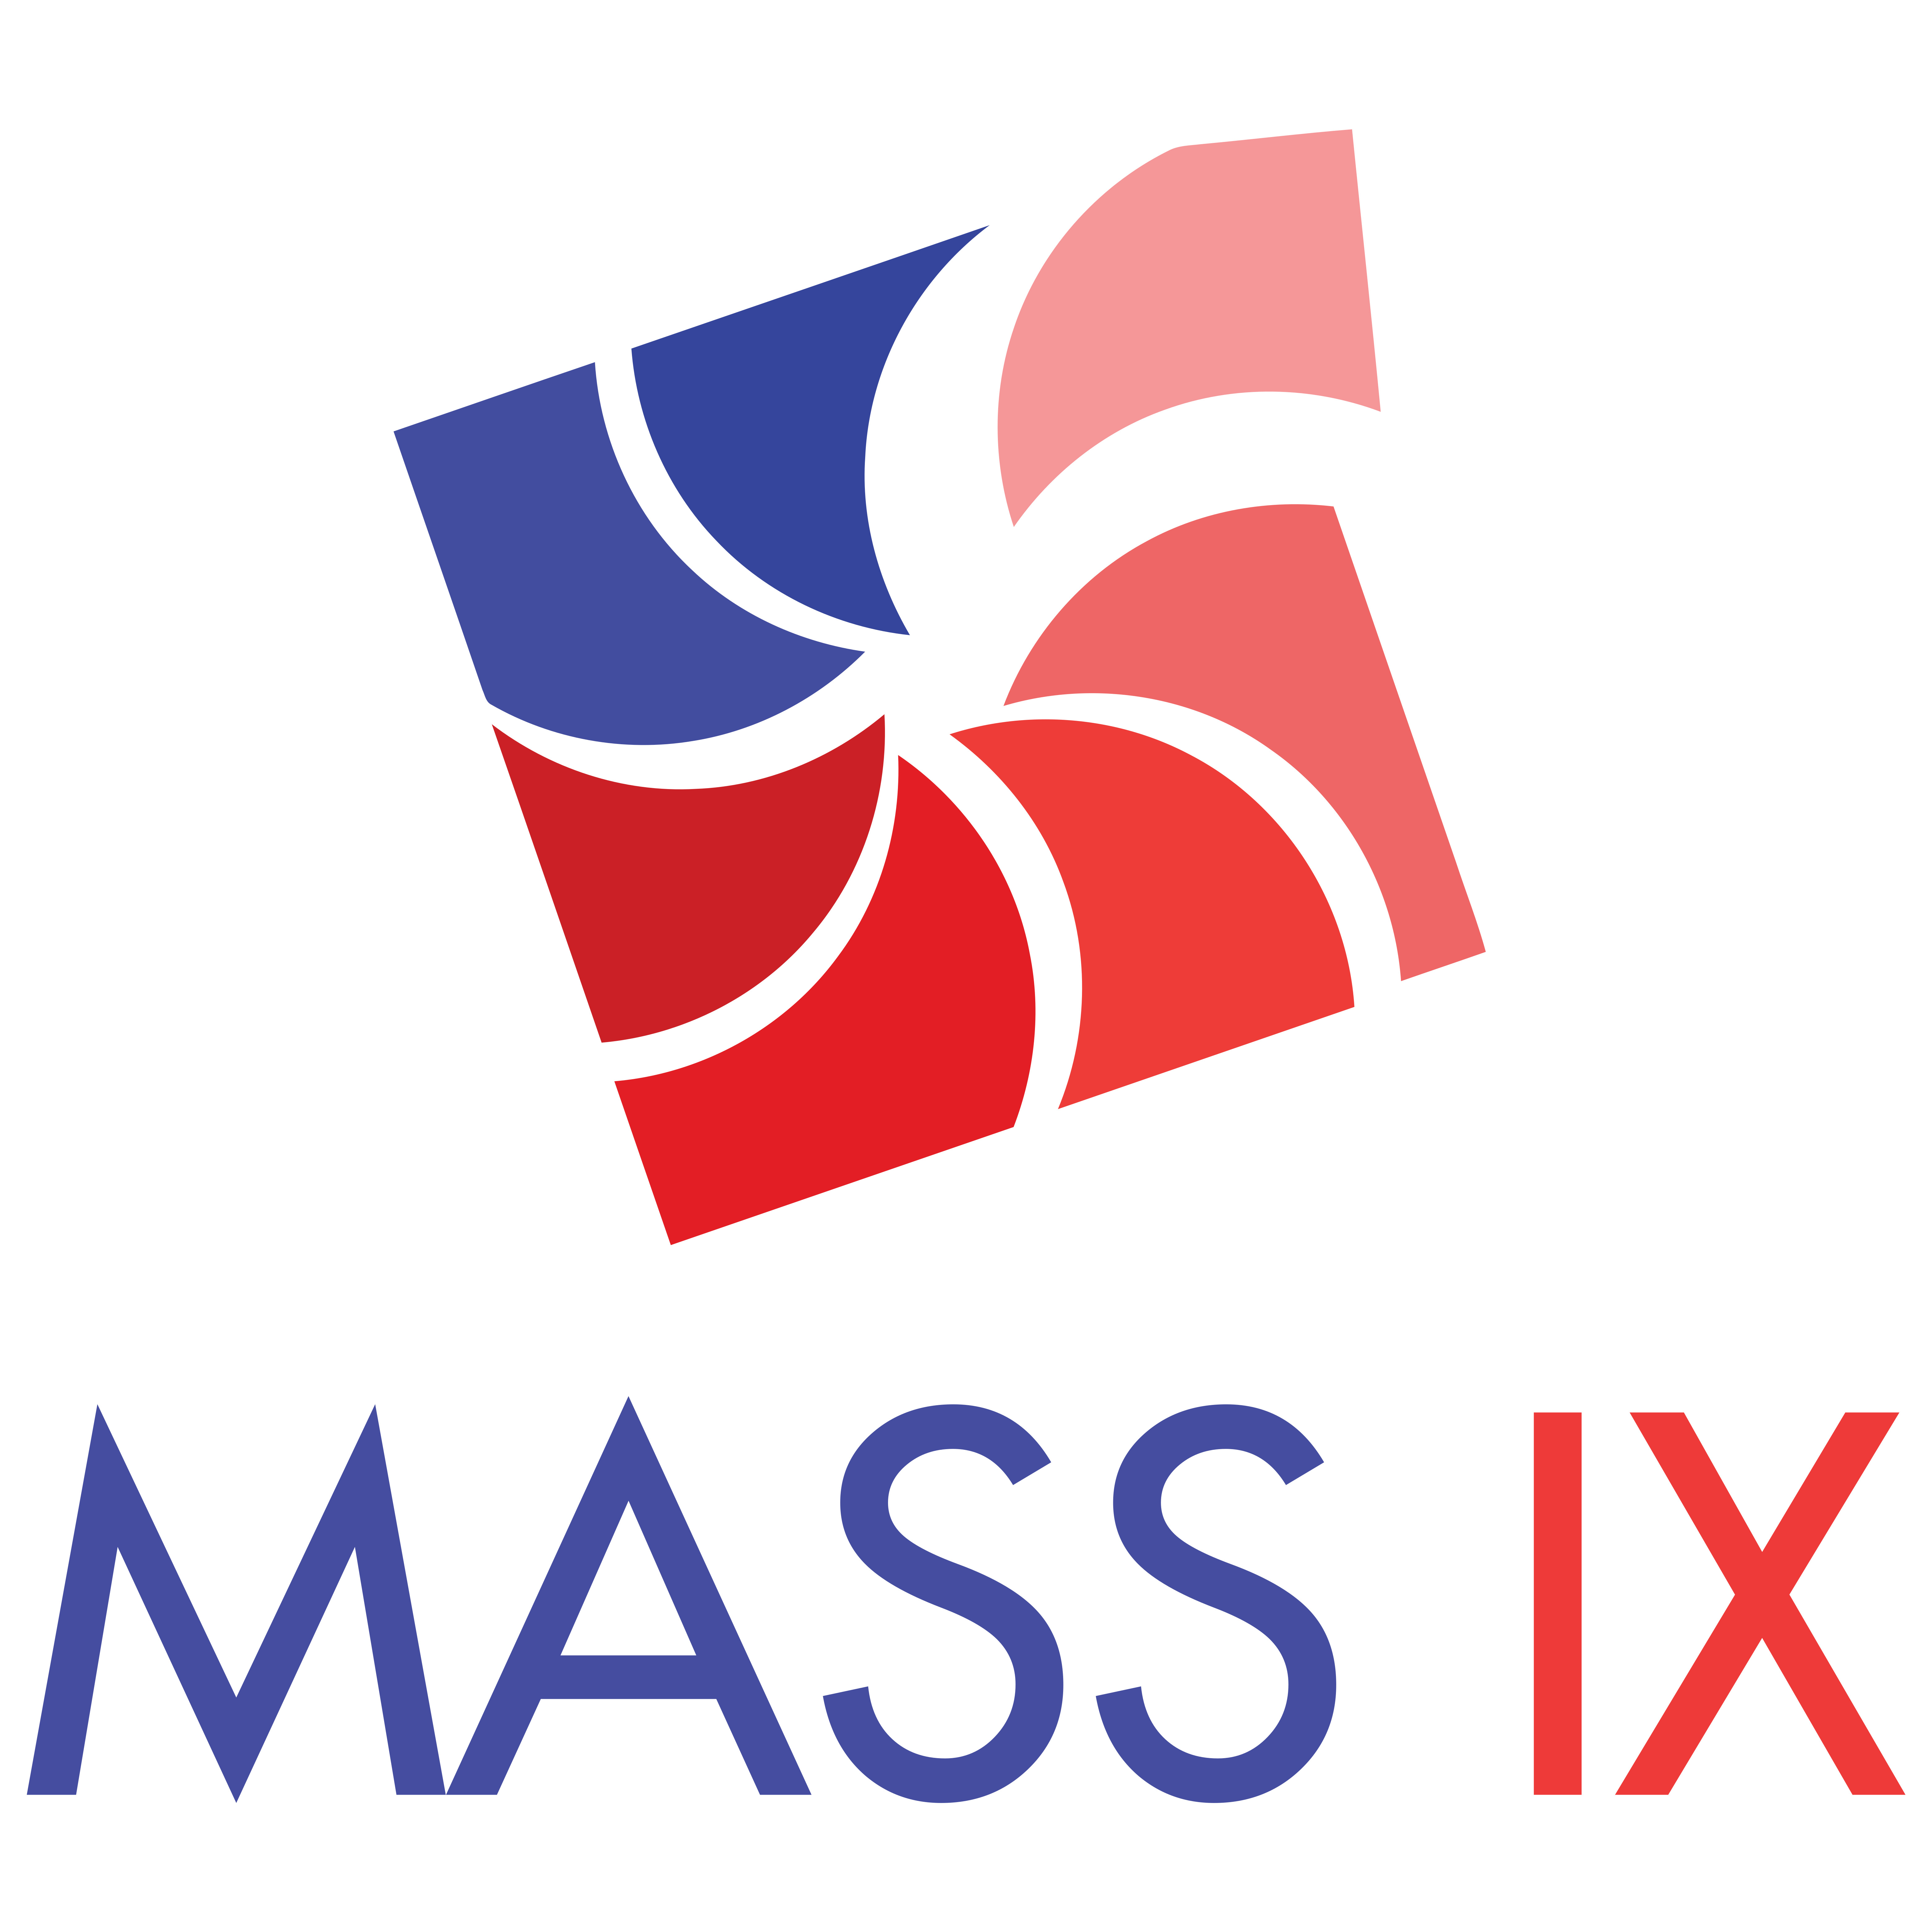 MASS IX